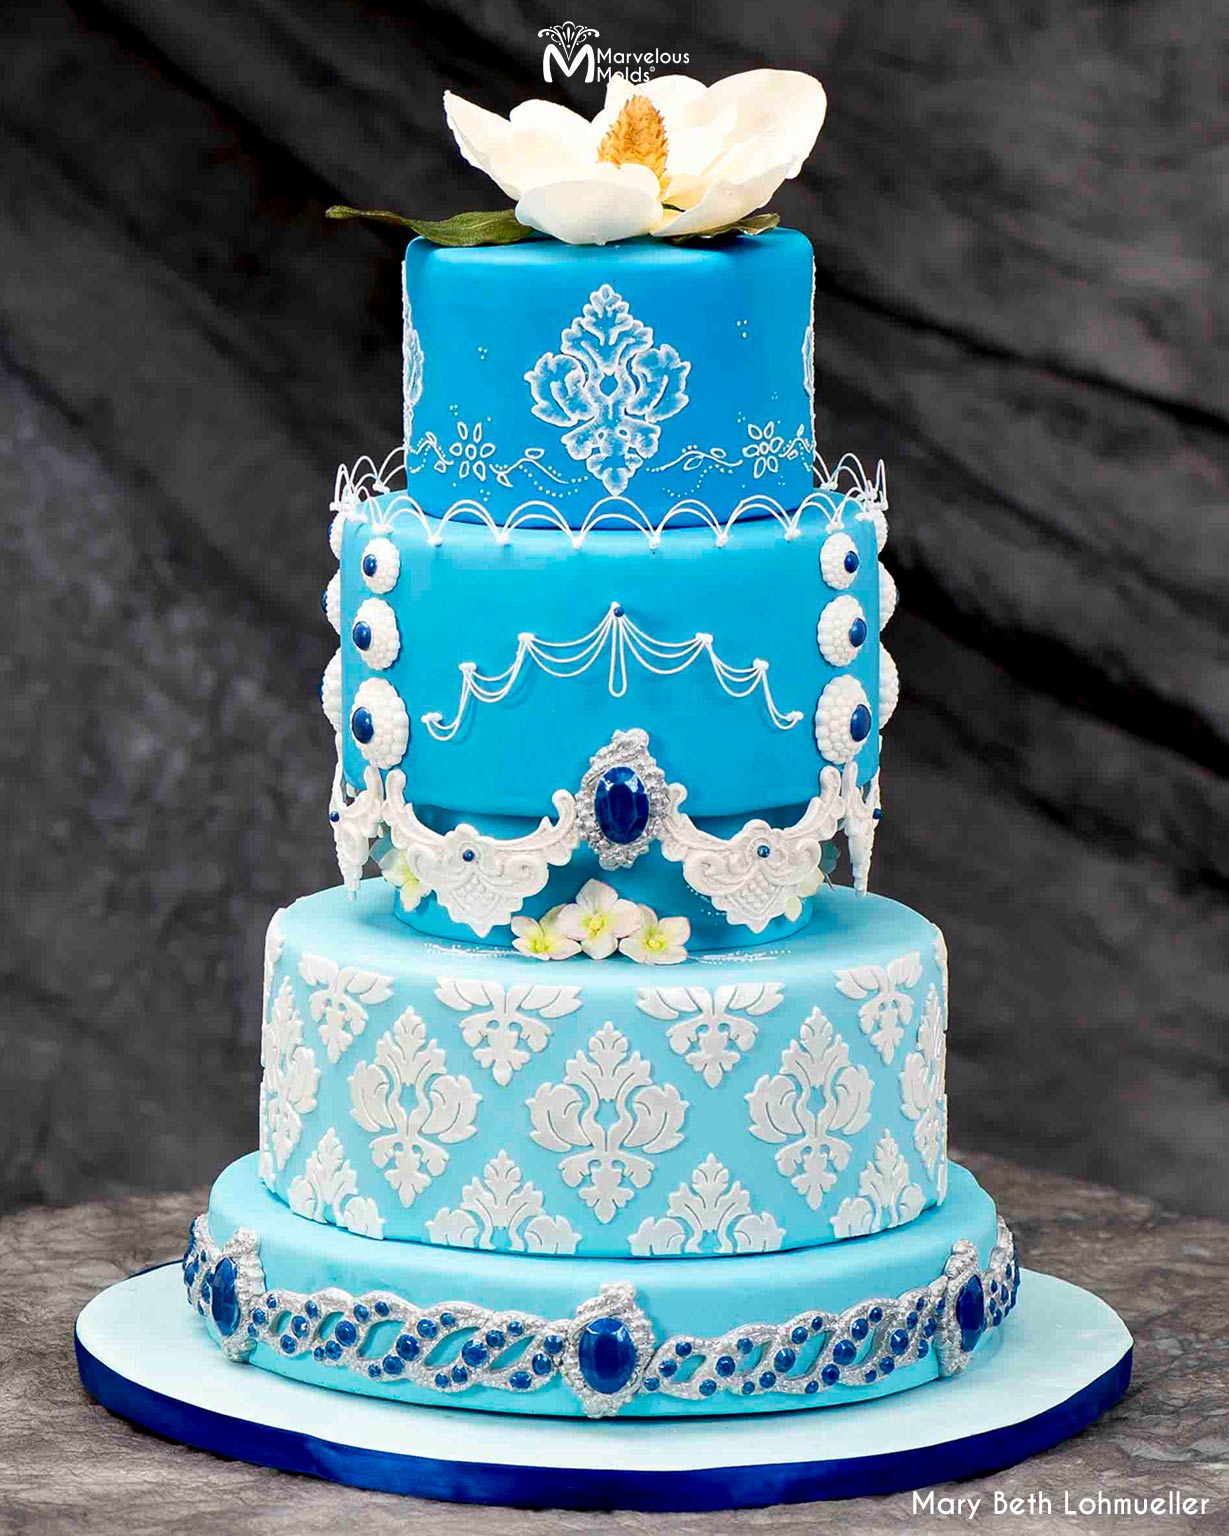 Mackinac Island Wedding Cakes — Married on Mackinac